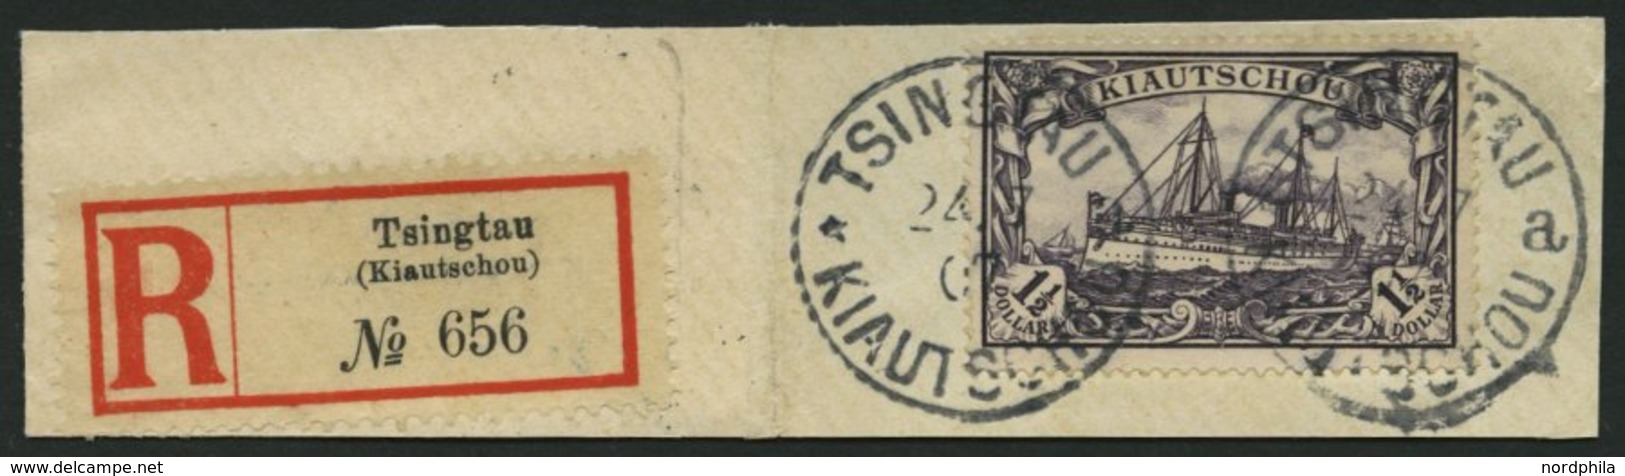 KIAUTSCHOU 26A BrfStk, 1905, 11/2 $ Schwarzviolett, Ohne Wz., Gezähnt A, Großes Prachtbriefstück Mit R-Zettel, Fotoattes - Kiautschou